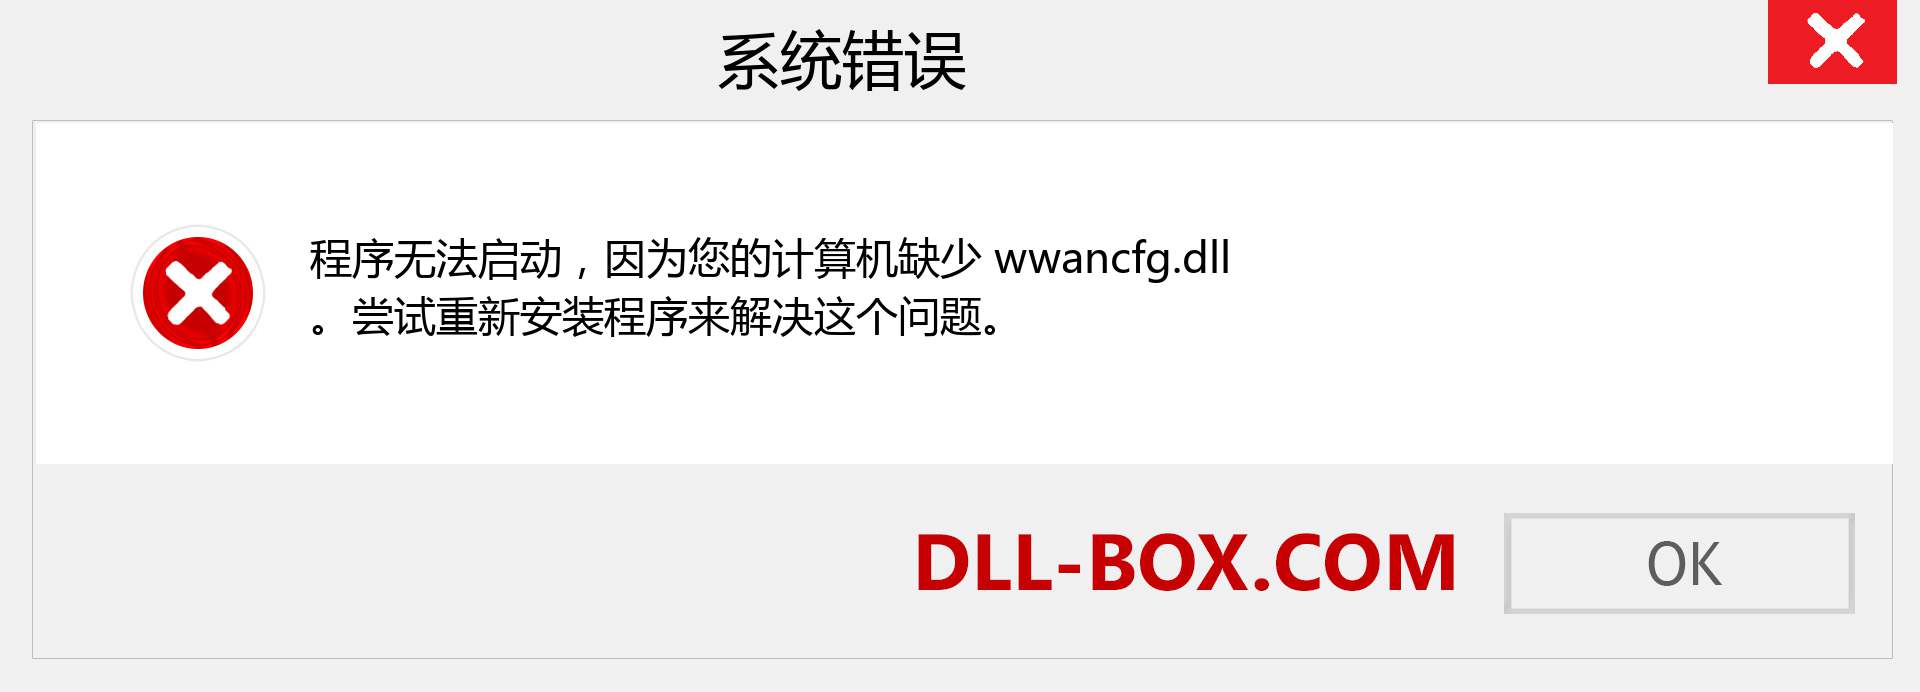 wwancfg.dll 文件丢失？。 适用于 Windows 7、8、10 的下载 - 修复 Windows、照片、图像上的 wwancfg dll 丢失错误